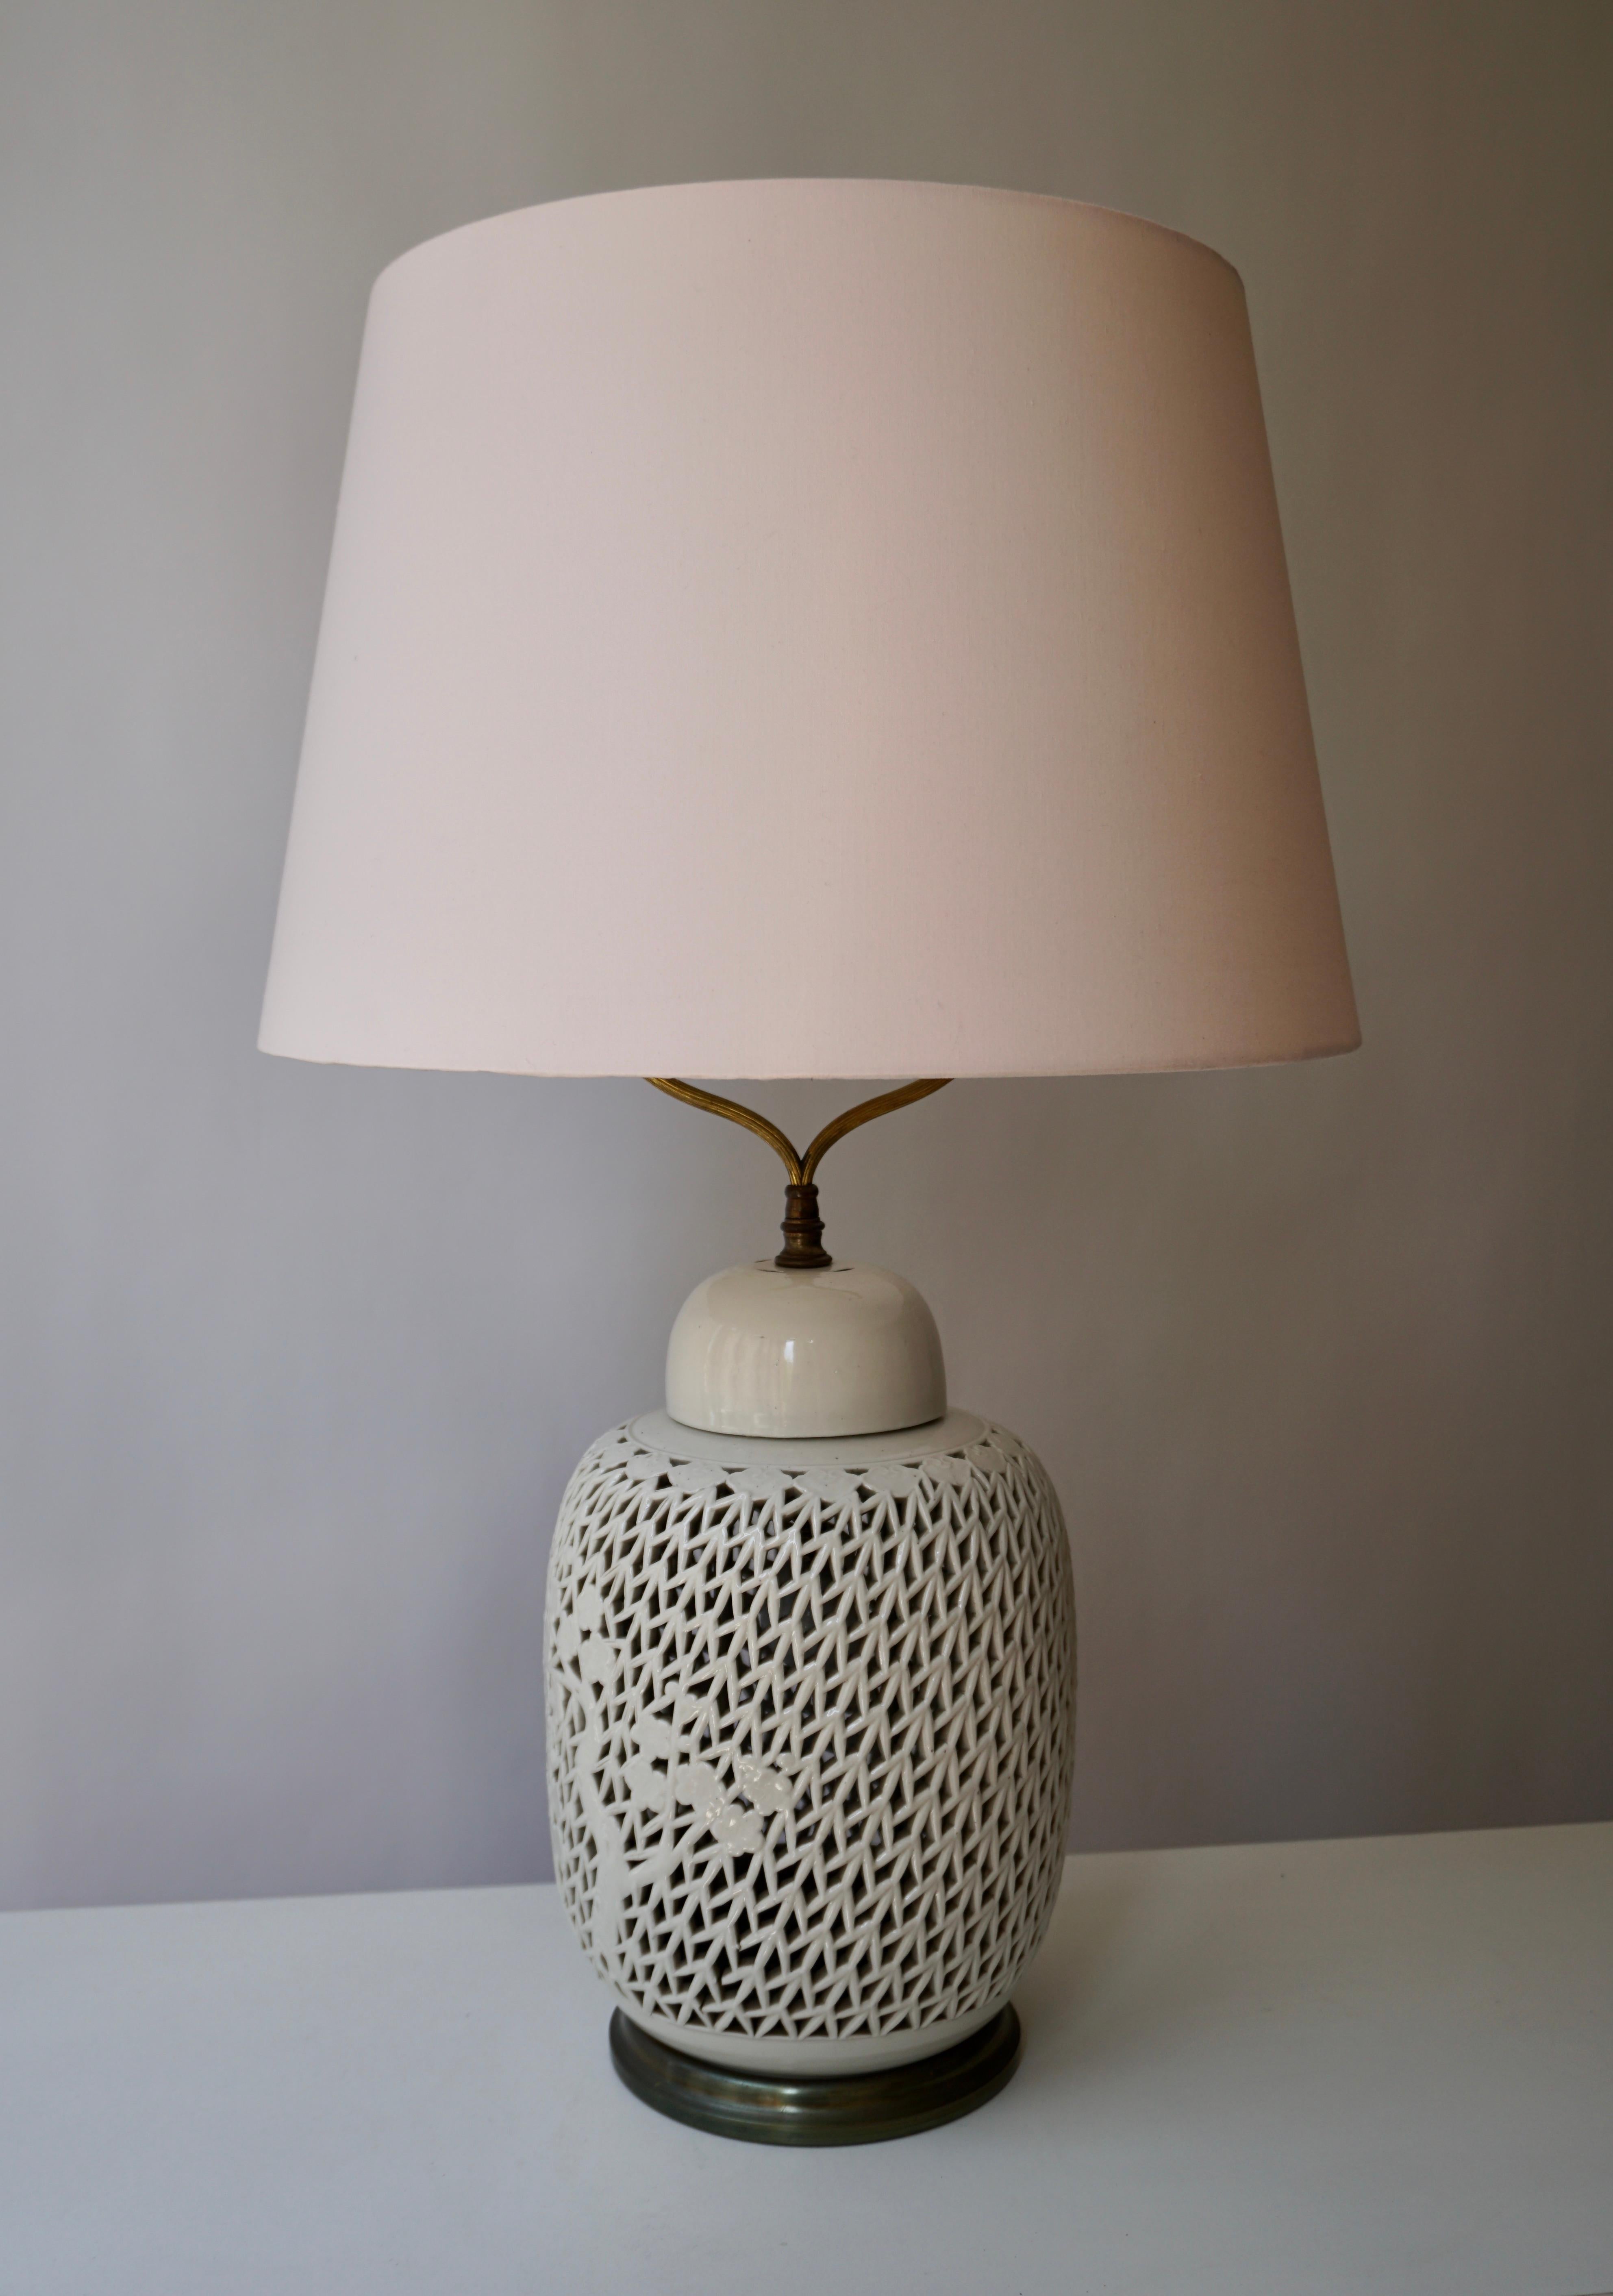 Lampe de table en porcelaine Blanc de Chine réticulée de taille inhabituelle. Cet exemple a une lumière intérieure permettant l'éclairage de l'ampoule supérieure et ou de la lumière intérieure comme illustré dans les photos. La lampe est en très bon